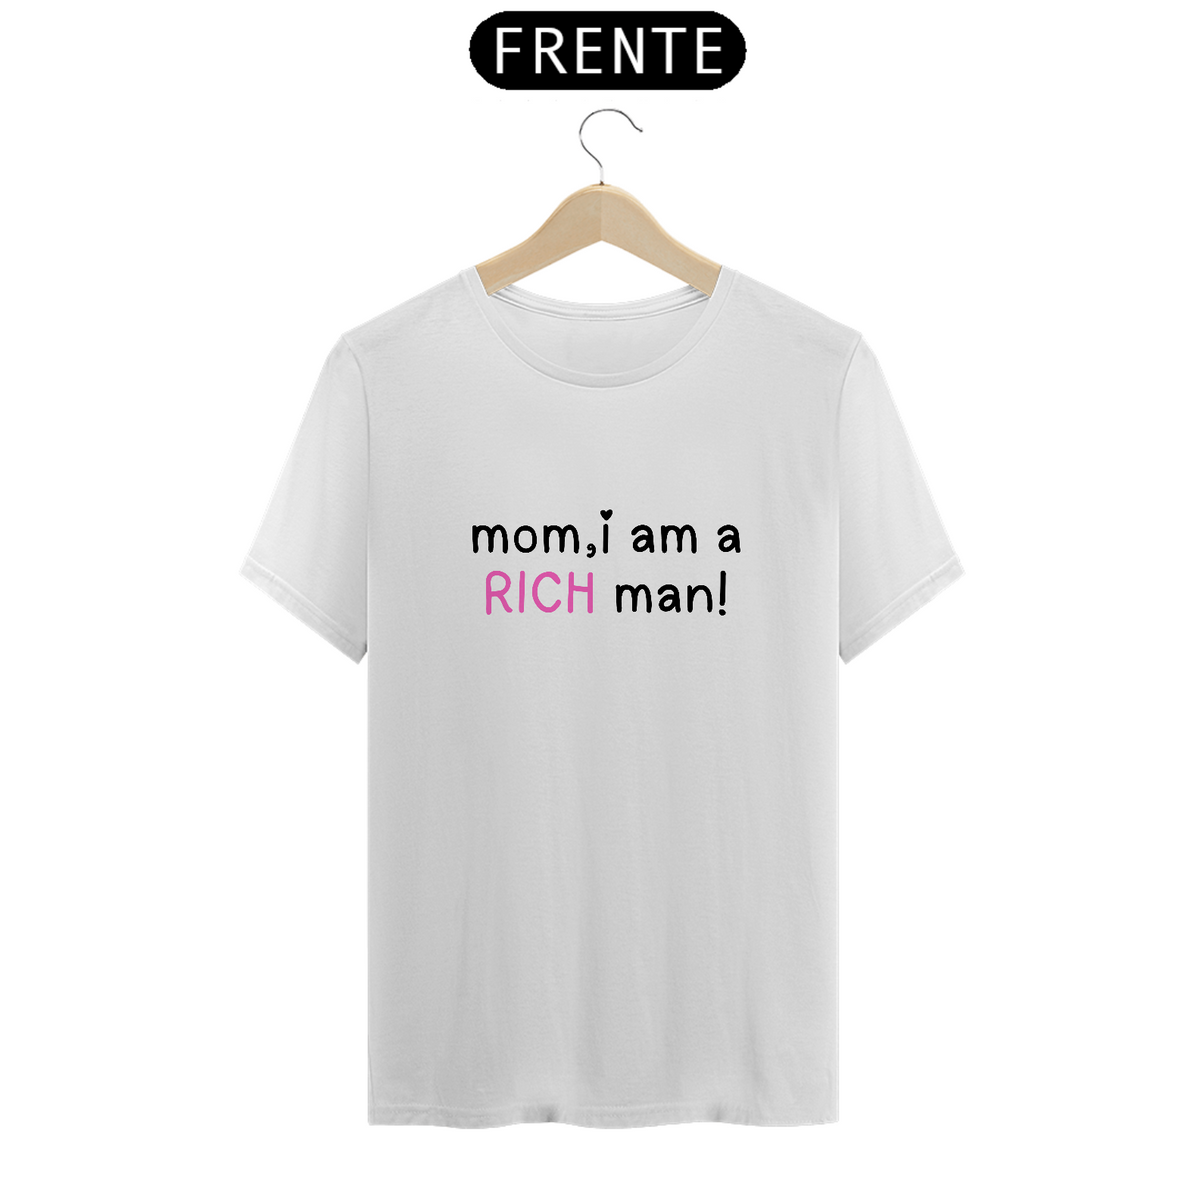 Nome do produto: Camiseta MOM,i am a rich man!